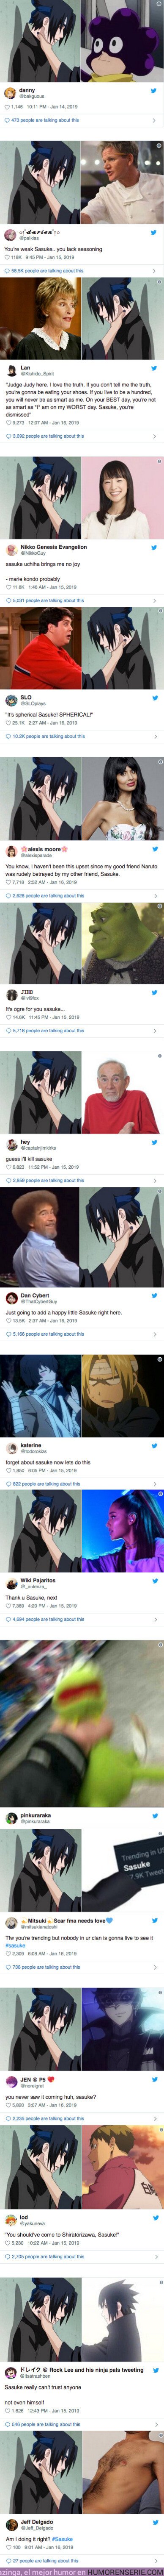 33832 - Sasuke de Naruto se convierte en el primer meme de anime de 2019. Recopilamos los mejores